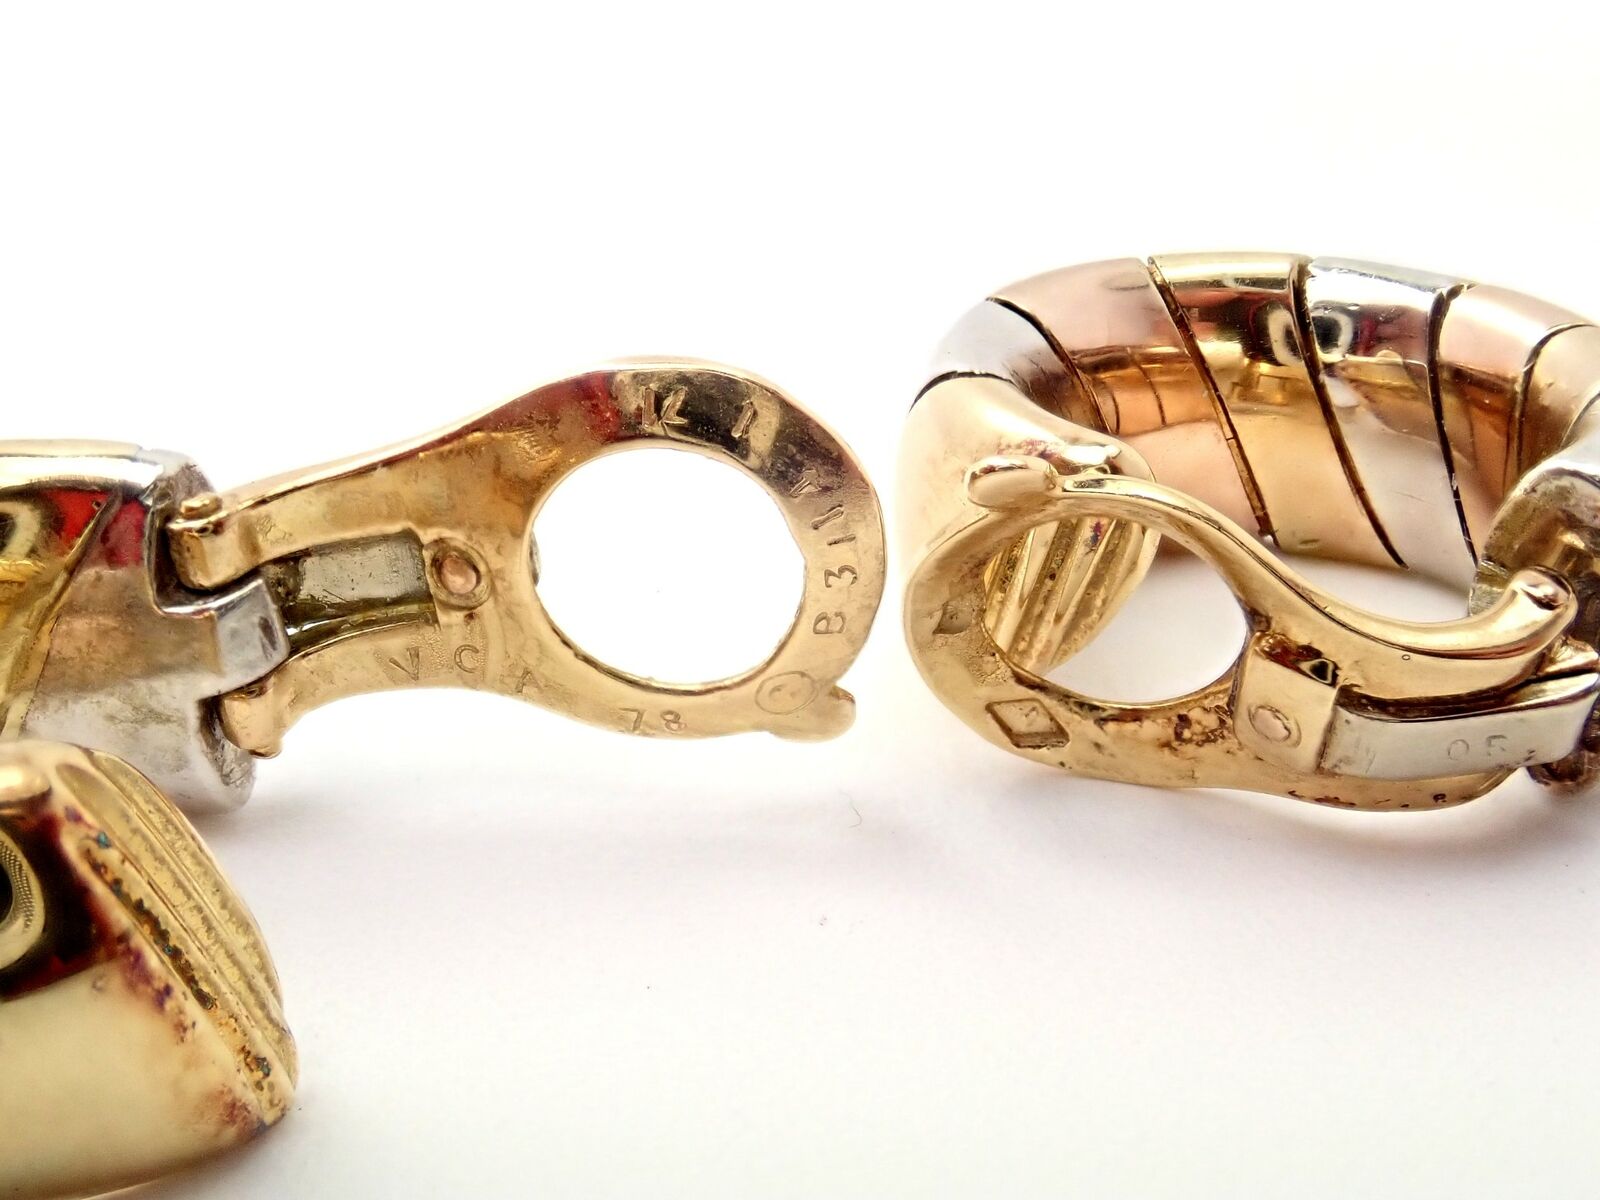 Van Cleef & Arpels Jewelry & Watches:Vintage & Antique Jewelry:Earrings Rare Vintage Van Cleef & Arpels 18k Yellow + Rose Gold Silver Hoop Earrings 1978